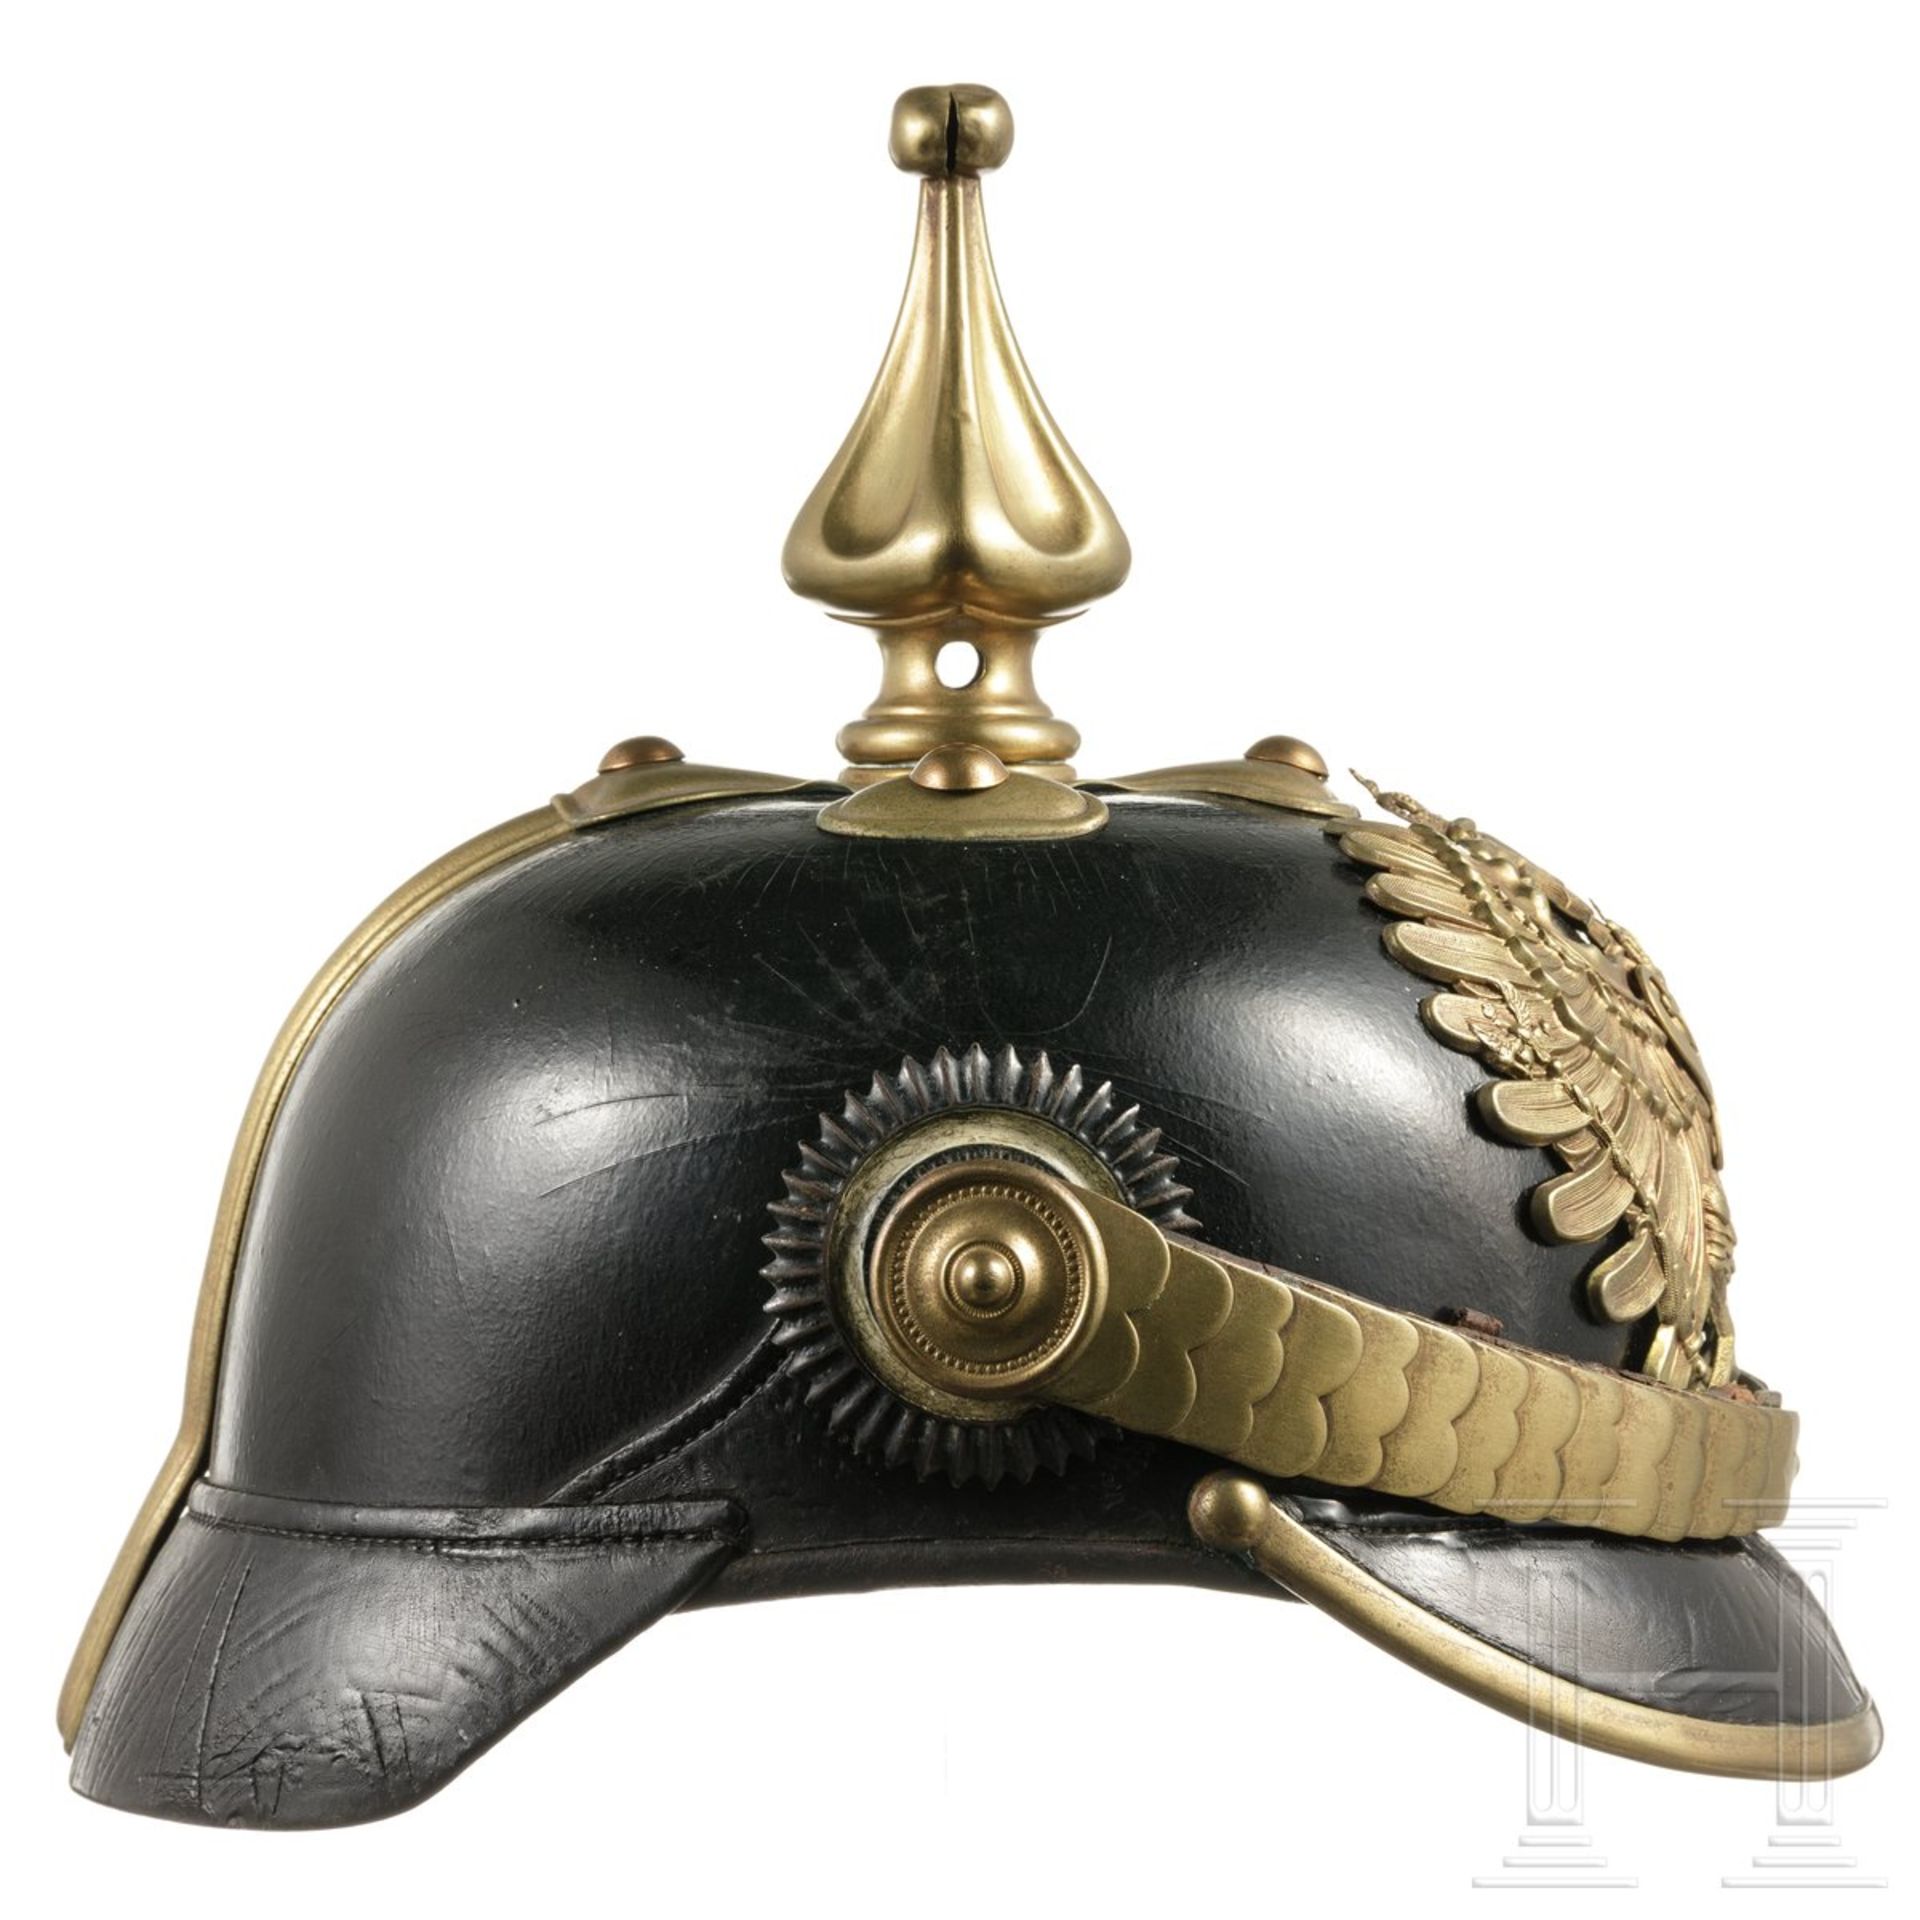 Helm der preußischen Gendarmerie, um 1890 - Image 2 of 4